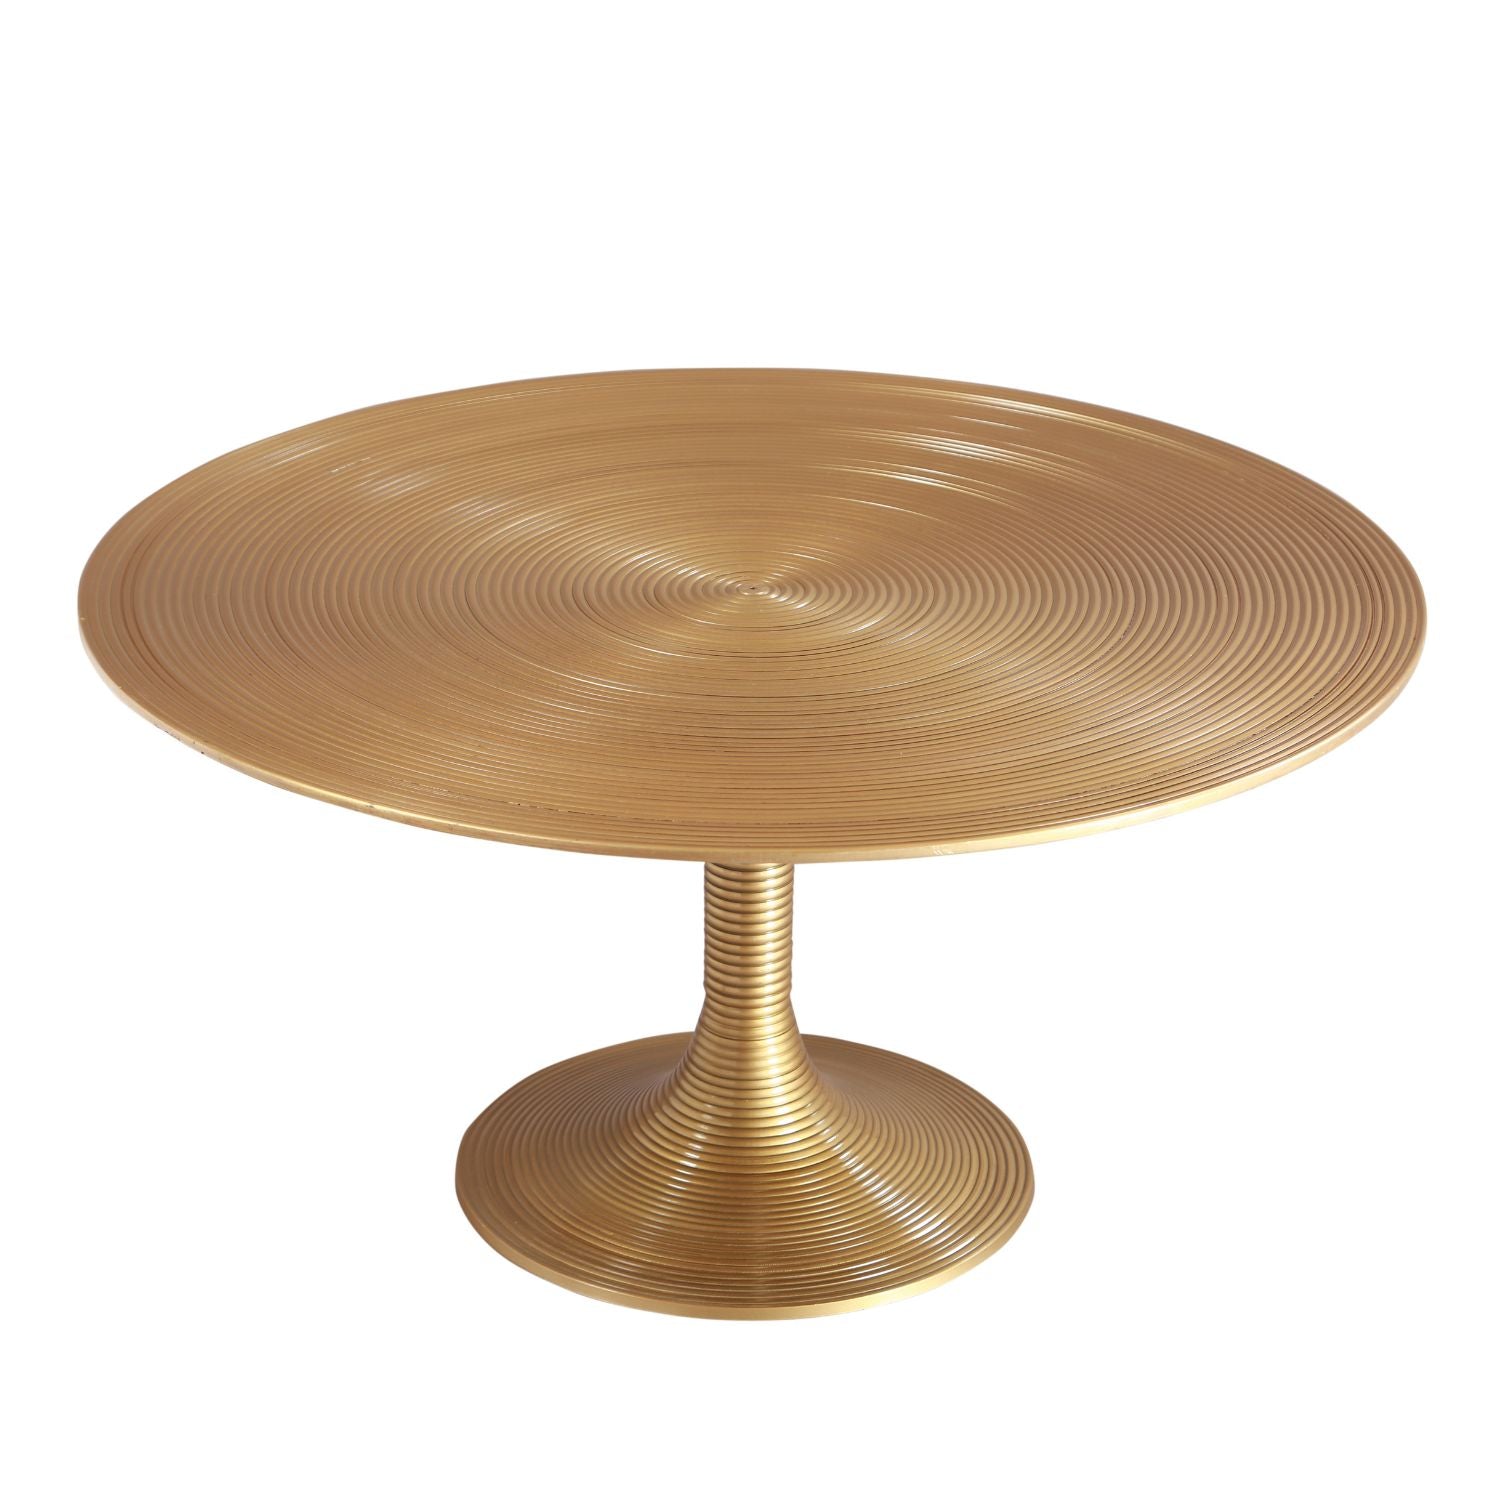 Antique Brass Aluminium Round Table 15.6 inches